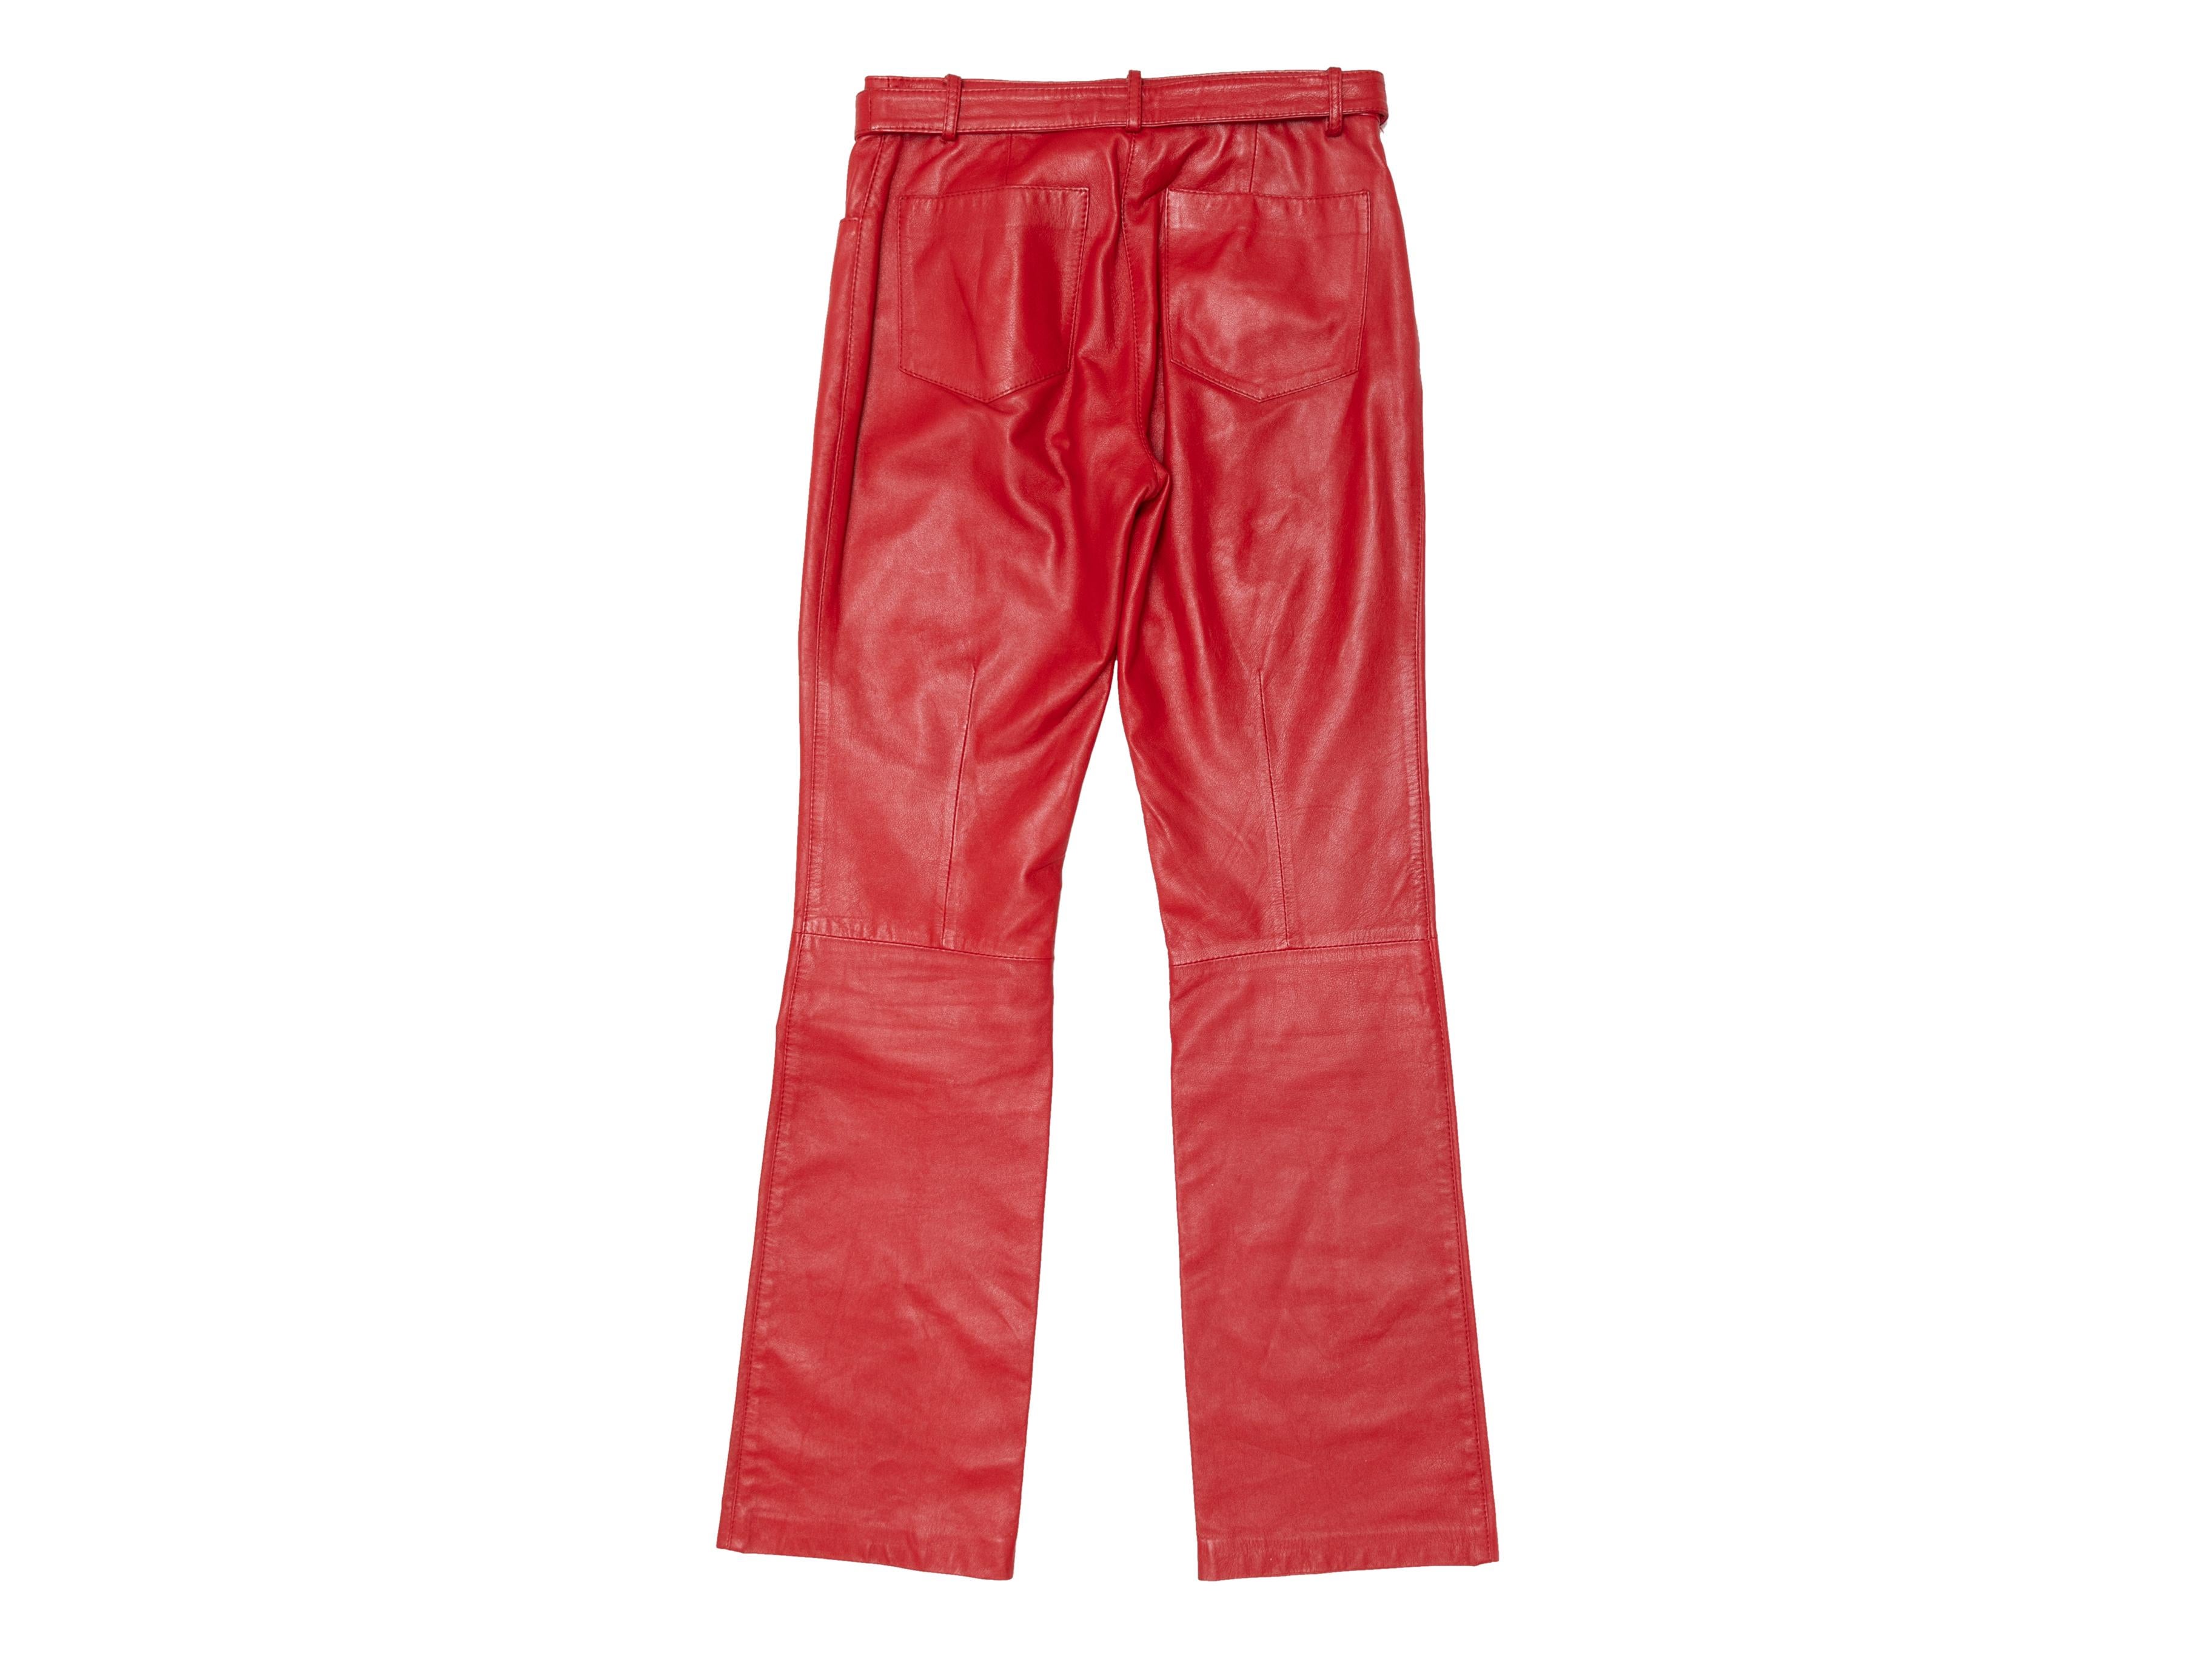 Rote Vintage-Lederhose von Dolce & Gabbana. CIRCA Anfang der 2000er Jahre. Fünf Taschen. Frontreißverschluss und Druckknopfverschluss an der Taille. 26